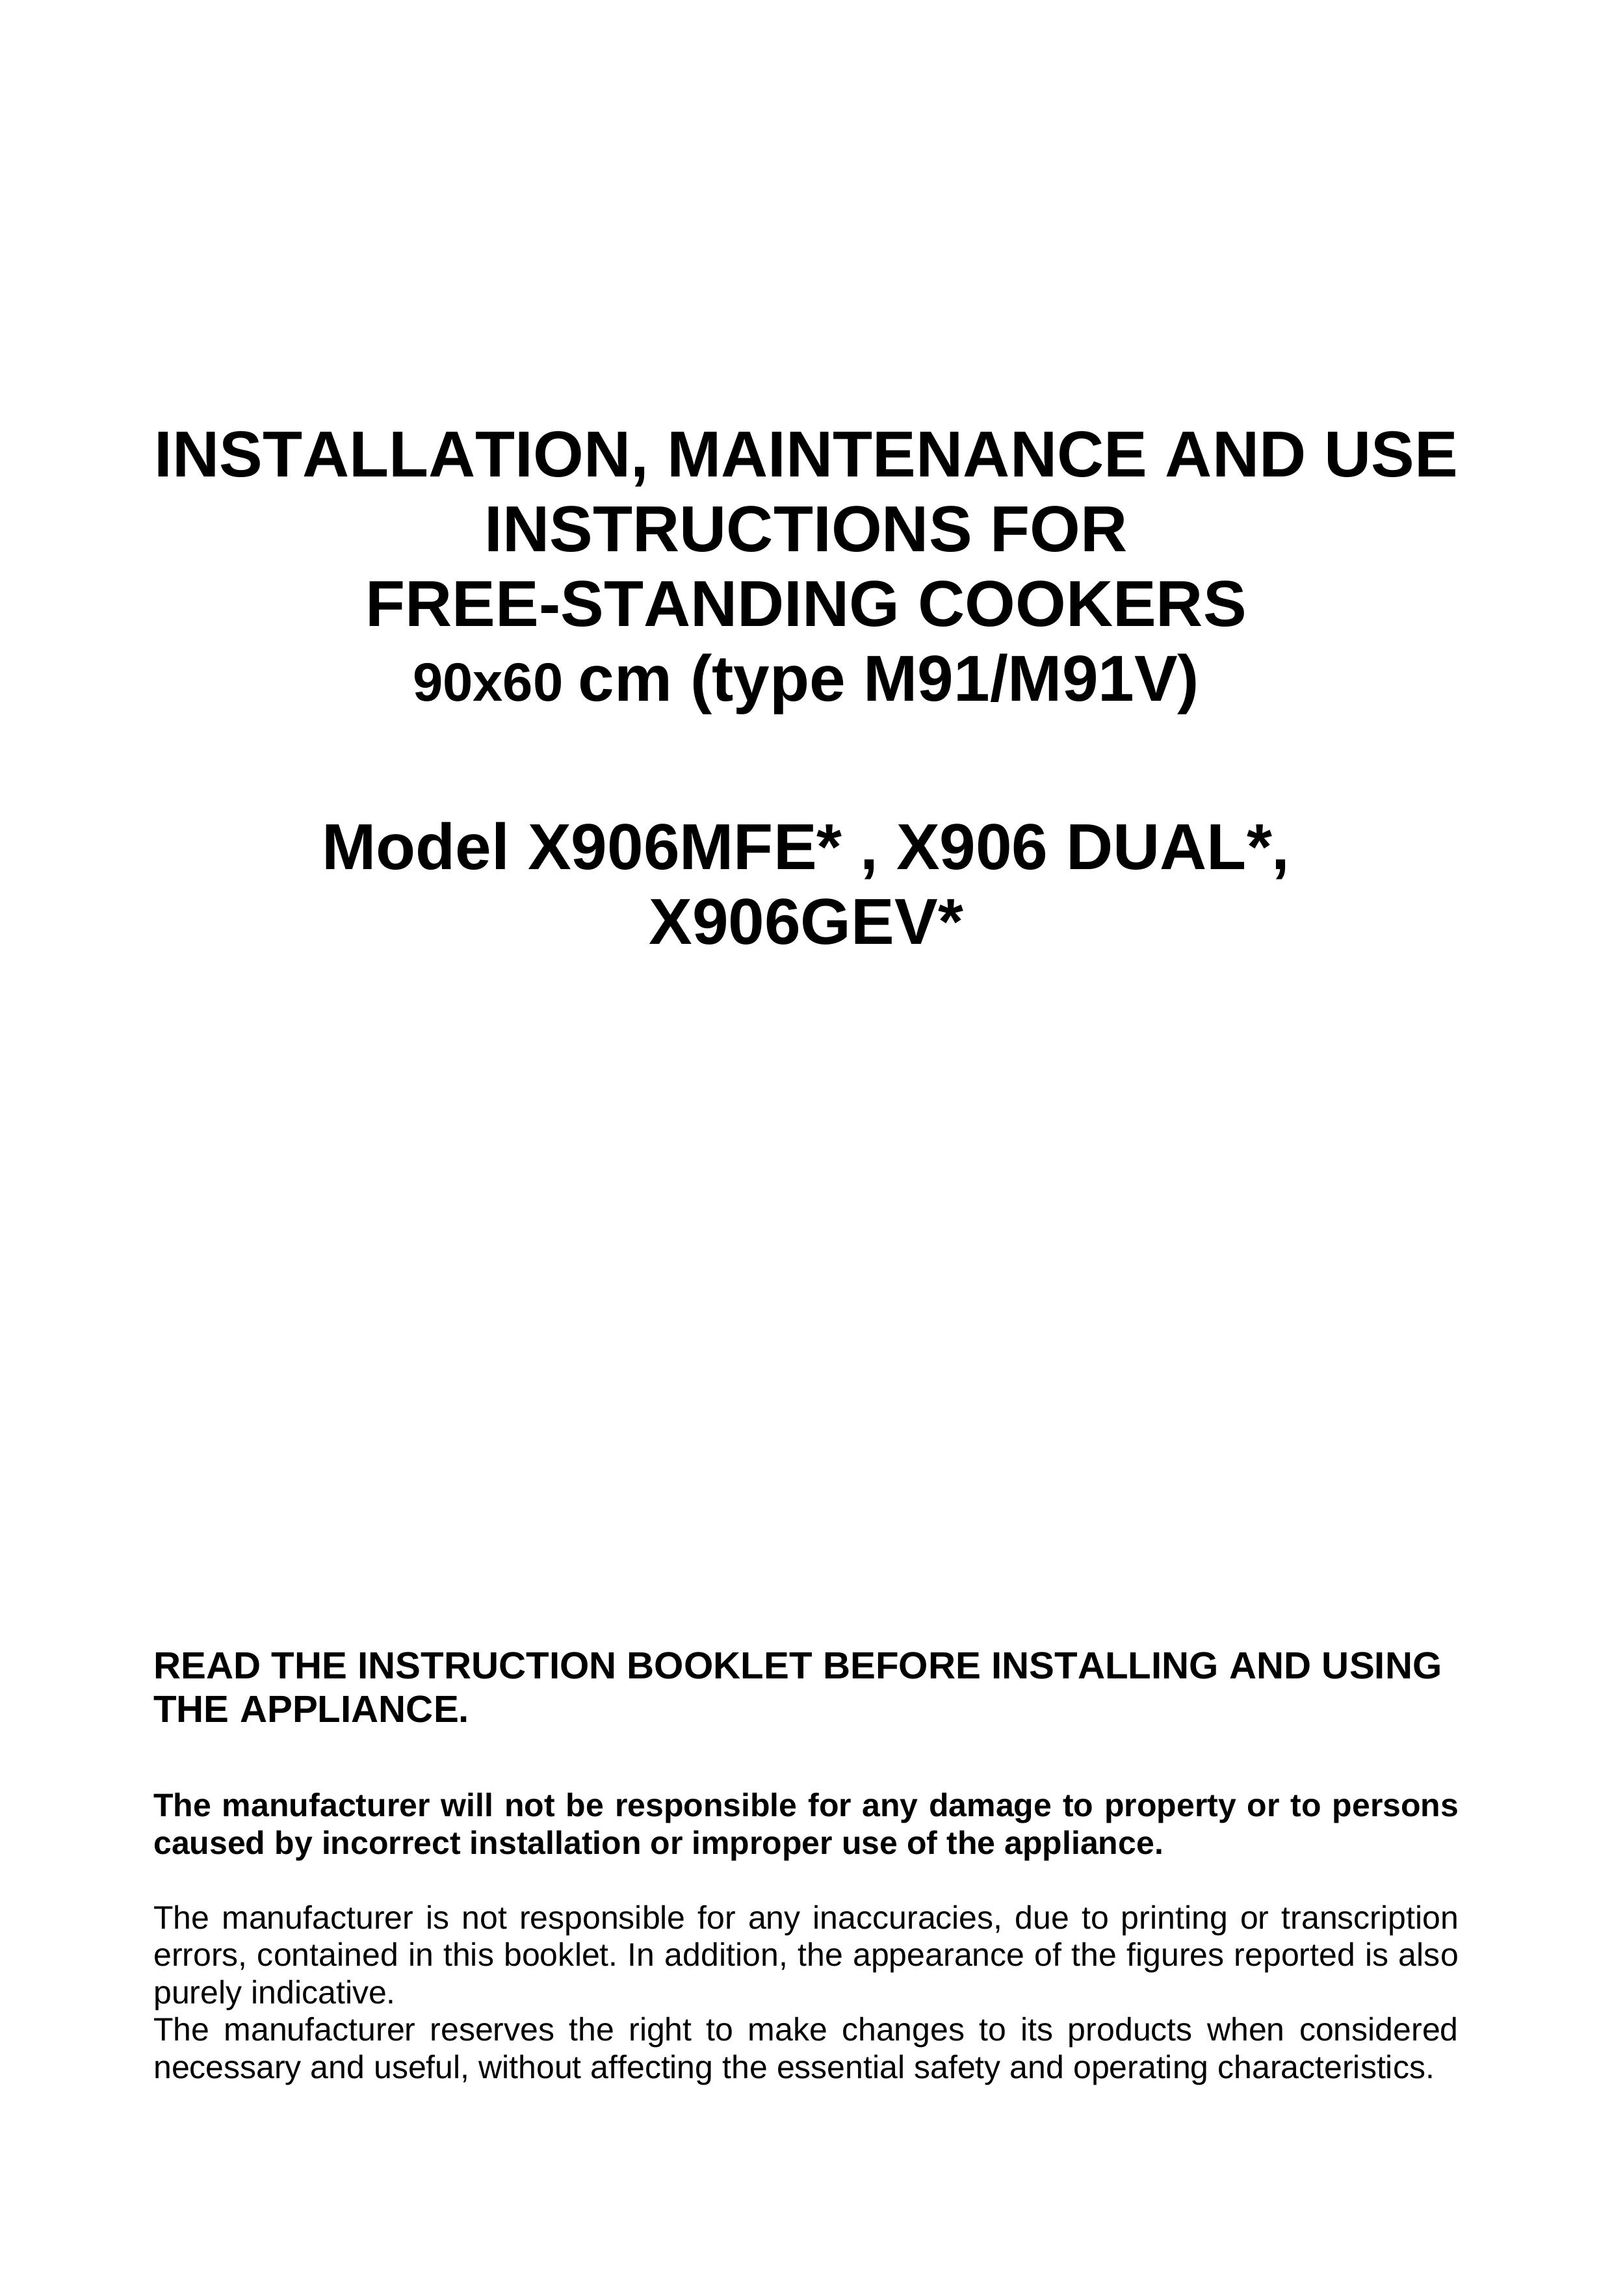 Bertazzoni X906 DUAL Cooktop User Manual